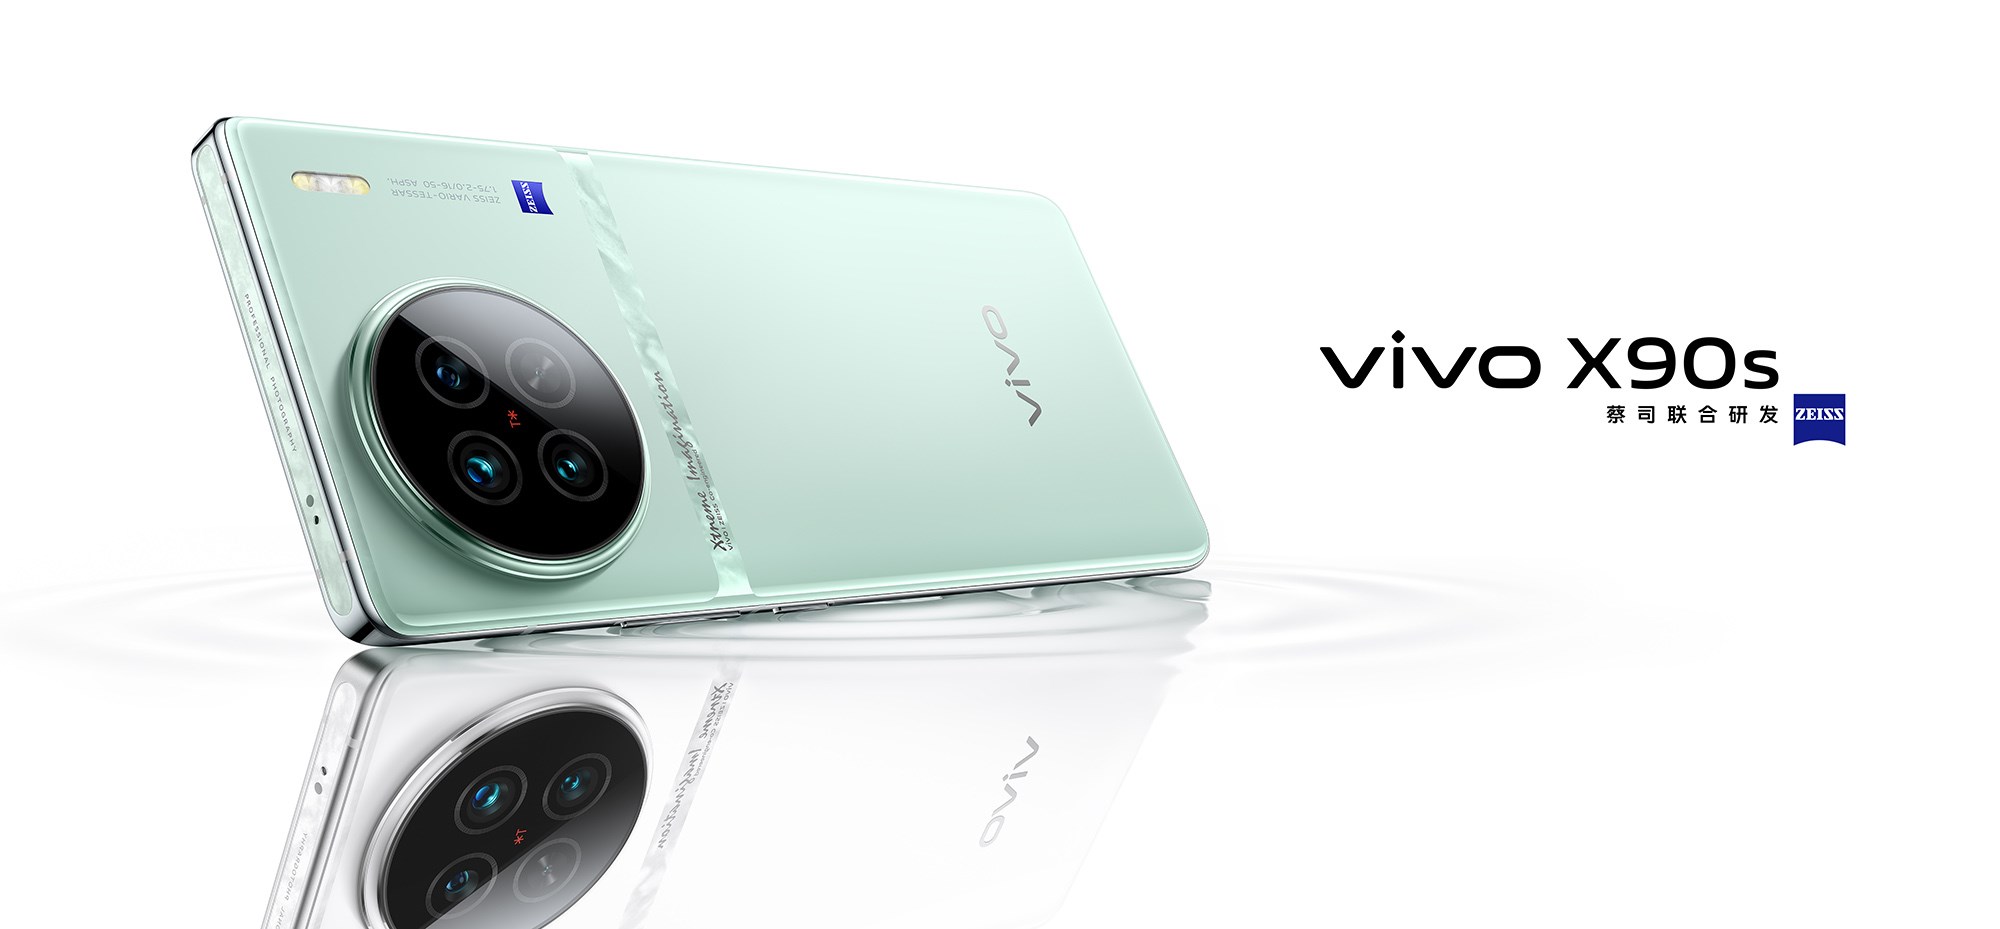 Vivo X90s duyurudan önce gözler önüne çıktı: İşte tasarımı